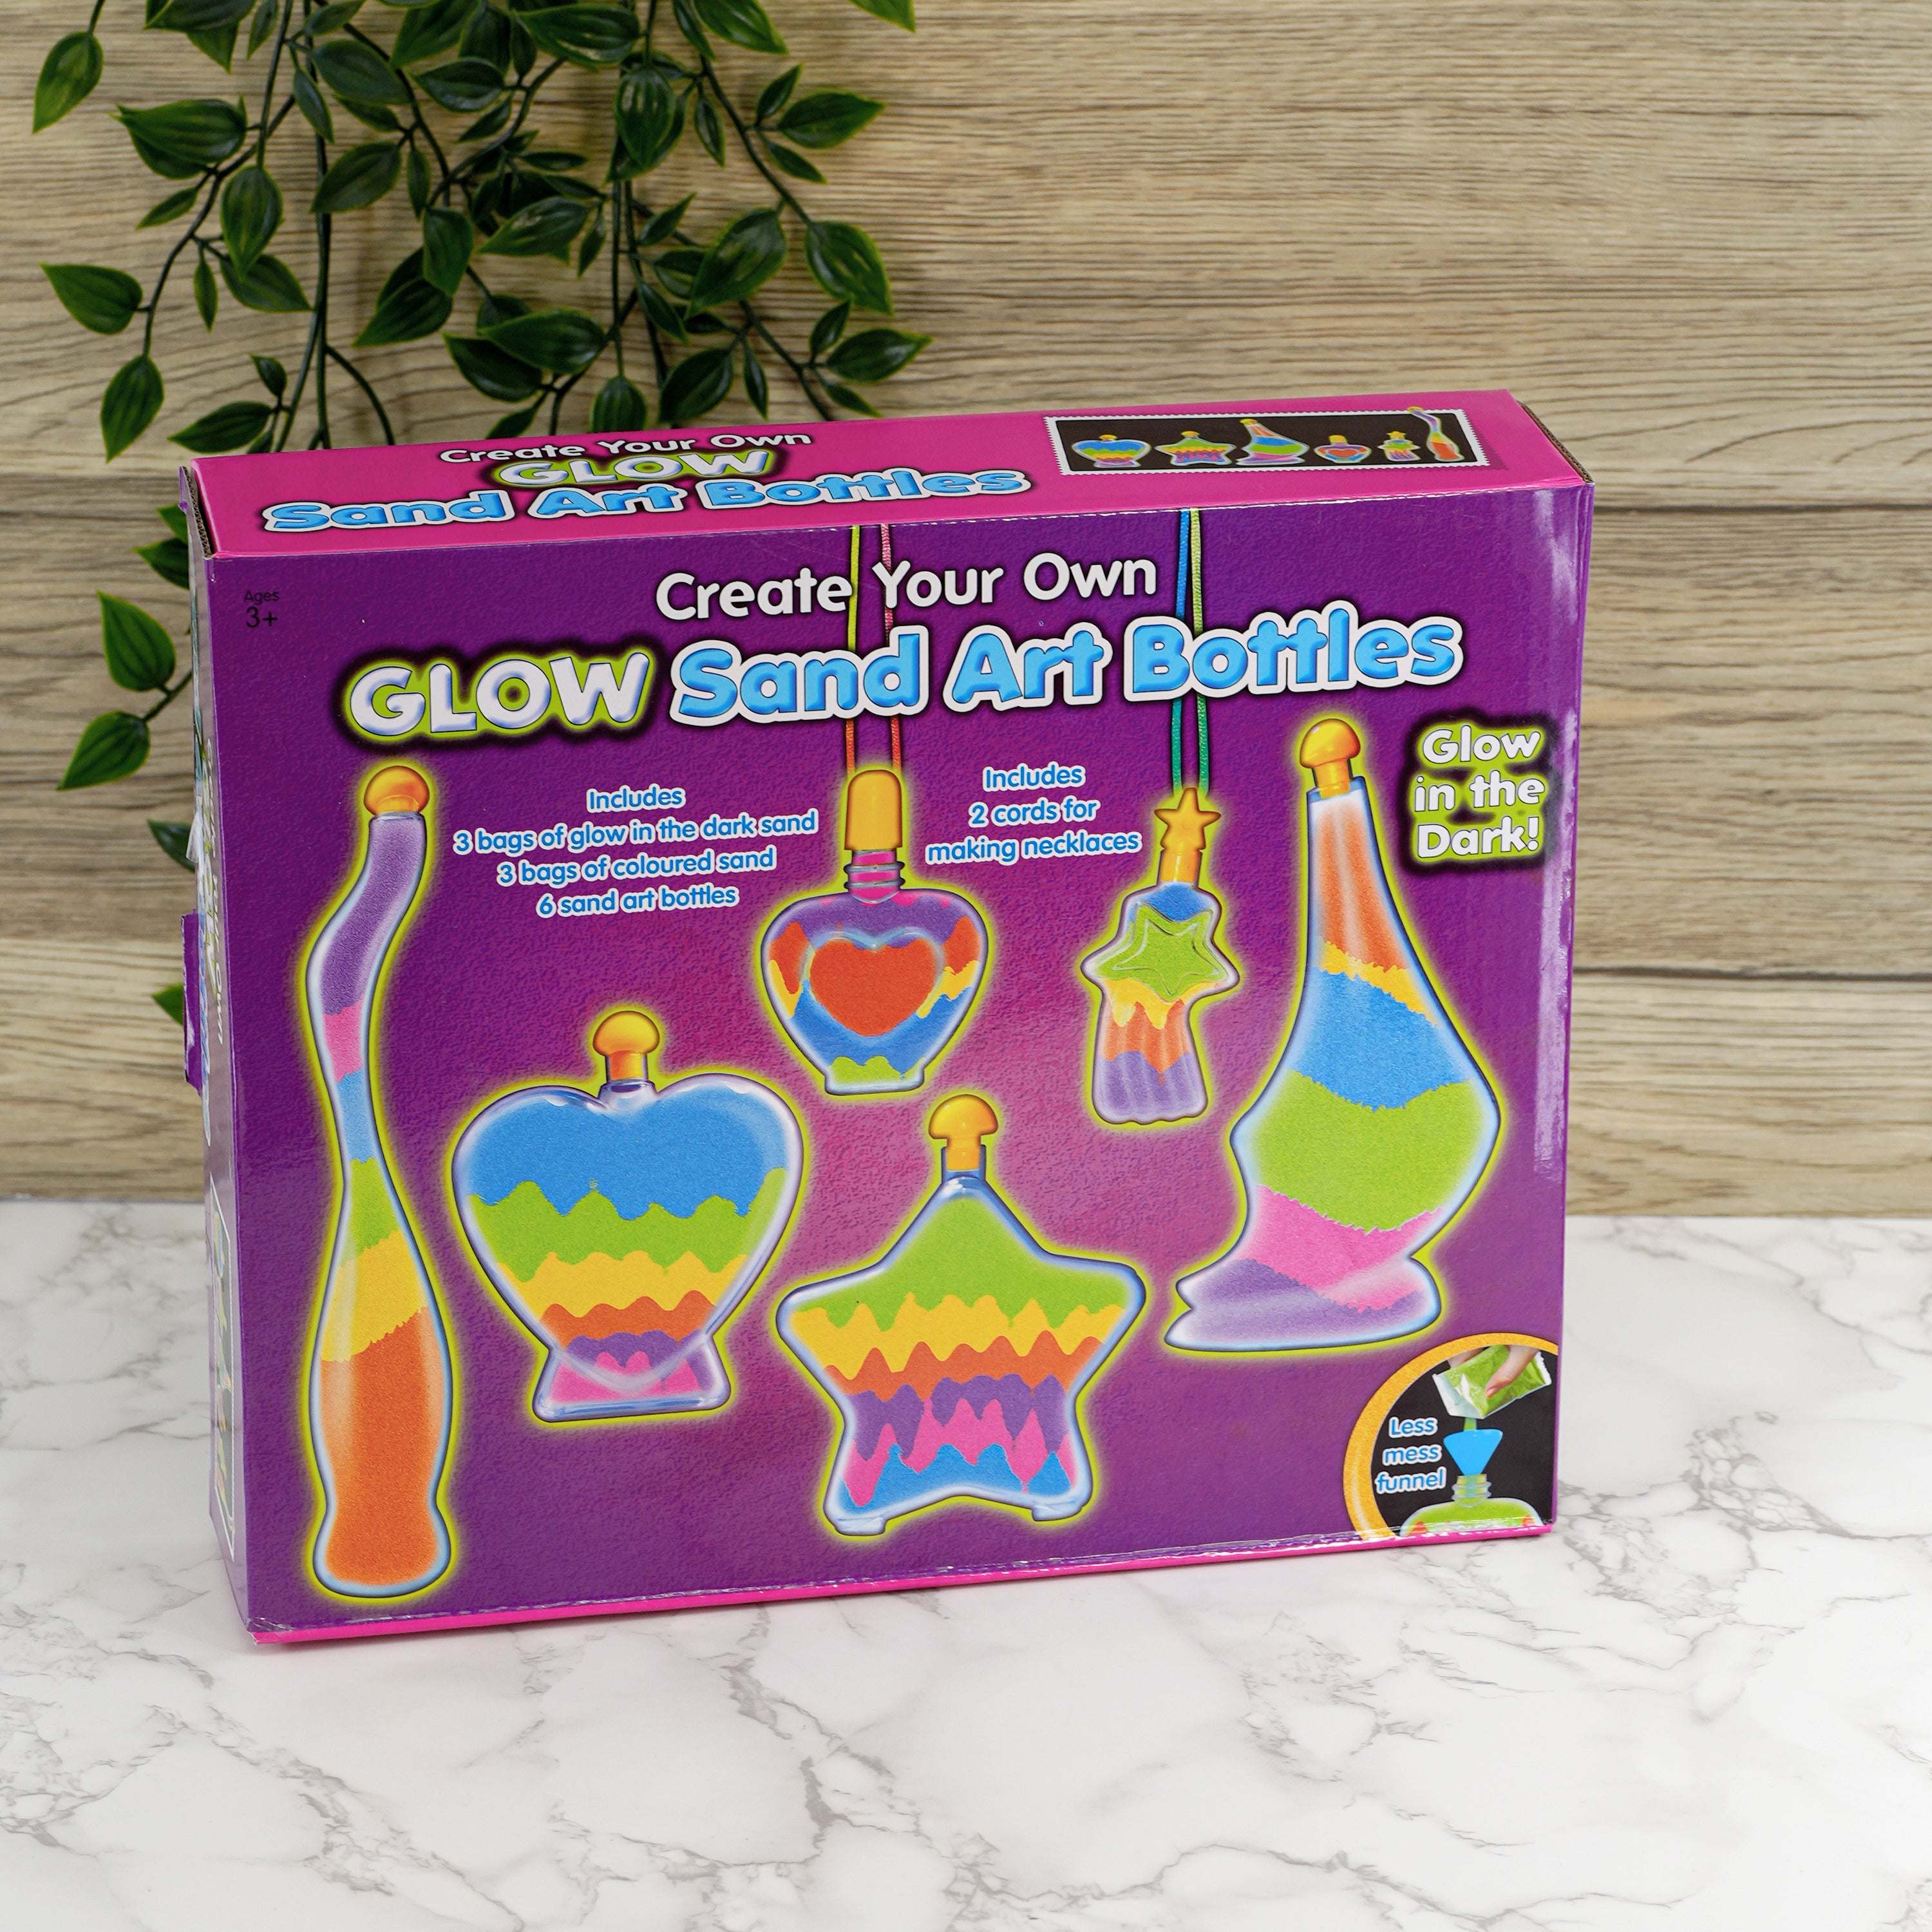 Childrens Glow in the Dark Bottle Sand Activity Kit The Magic Toy Shop - The Magic Toy Shop